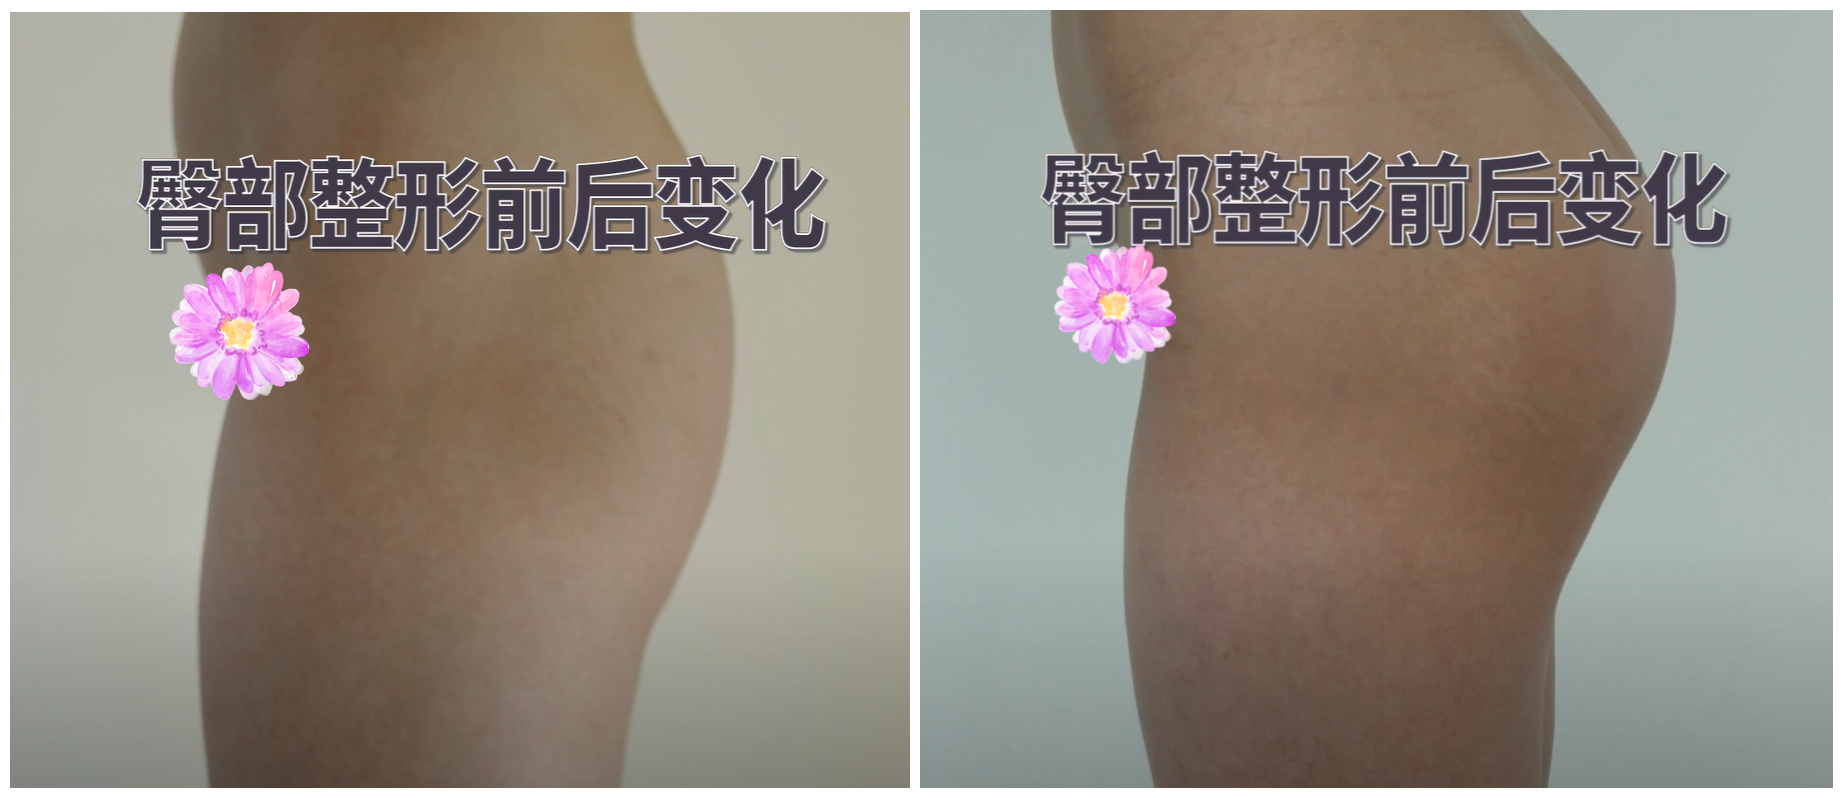 臀部整形名整探 的想法: 臀部两侧凹陷,可以通过自体脂肪移植来填